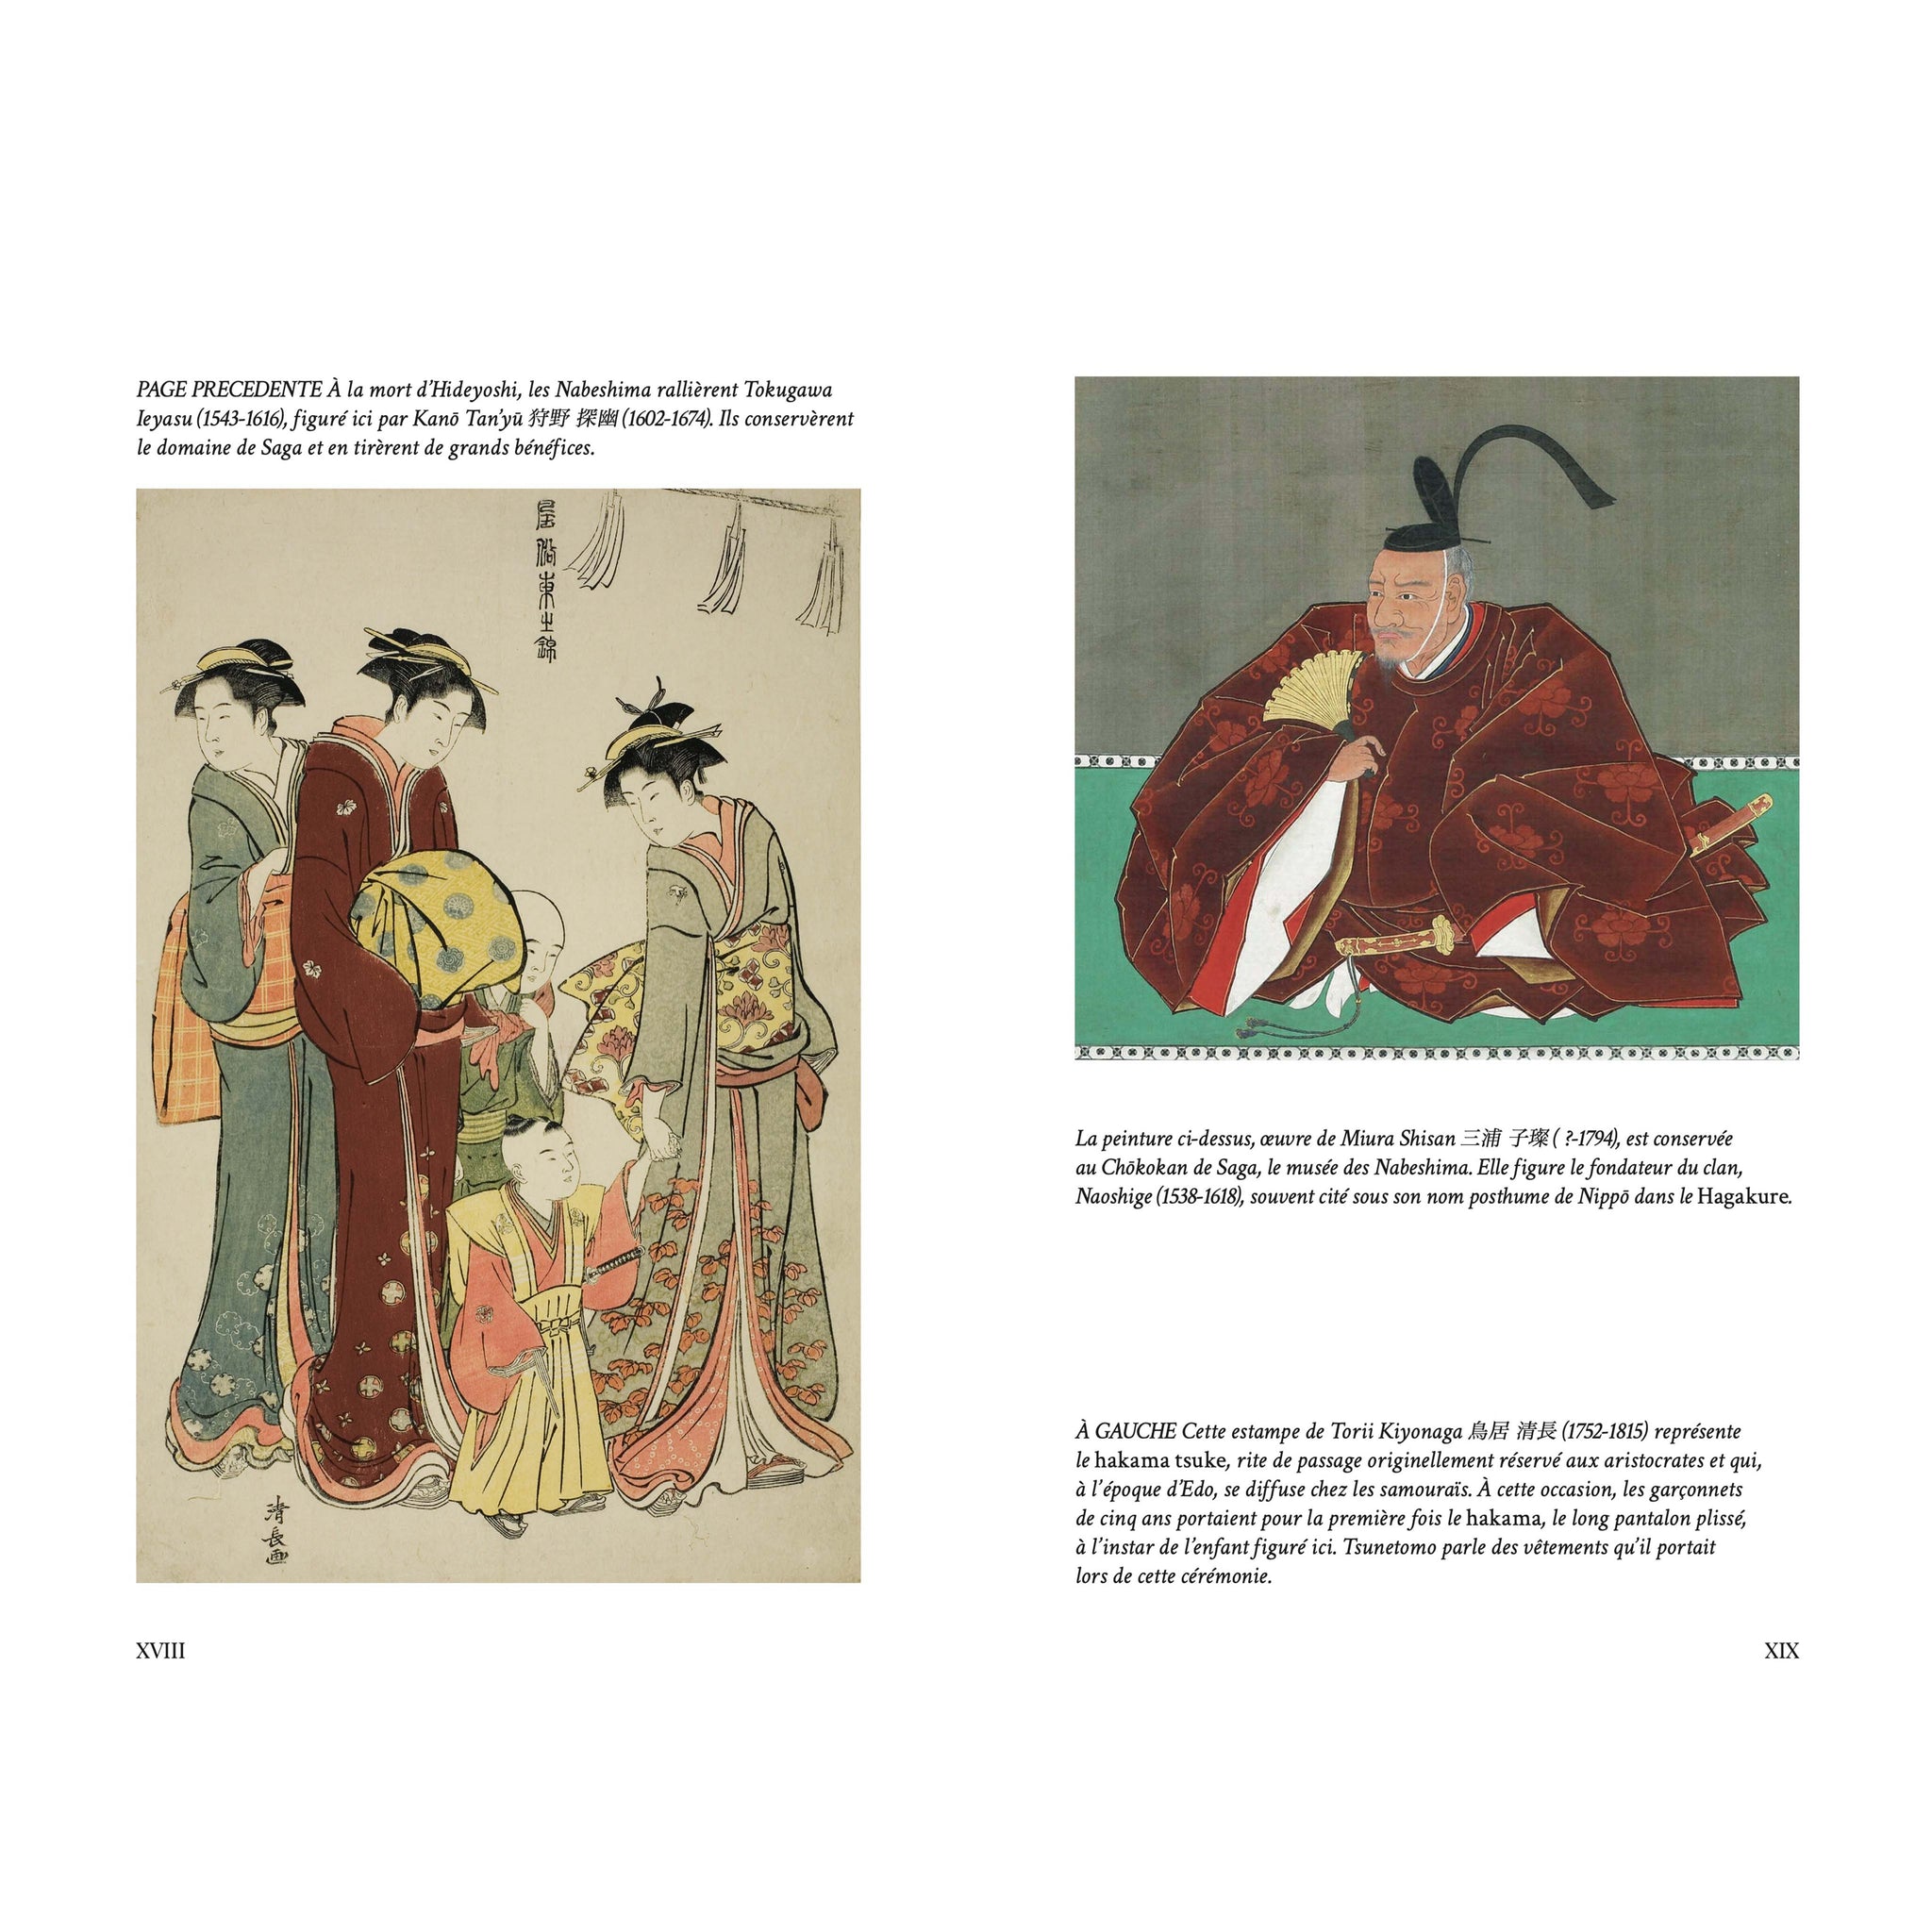 Miyamoto Musashi - Le Traité des Cinq Roues et autres écrits - Oeuvres –  NuiNui CH